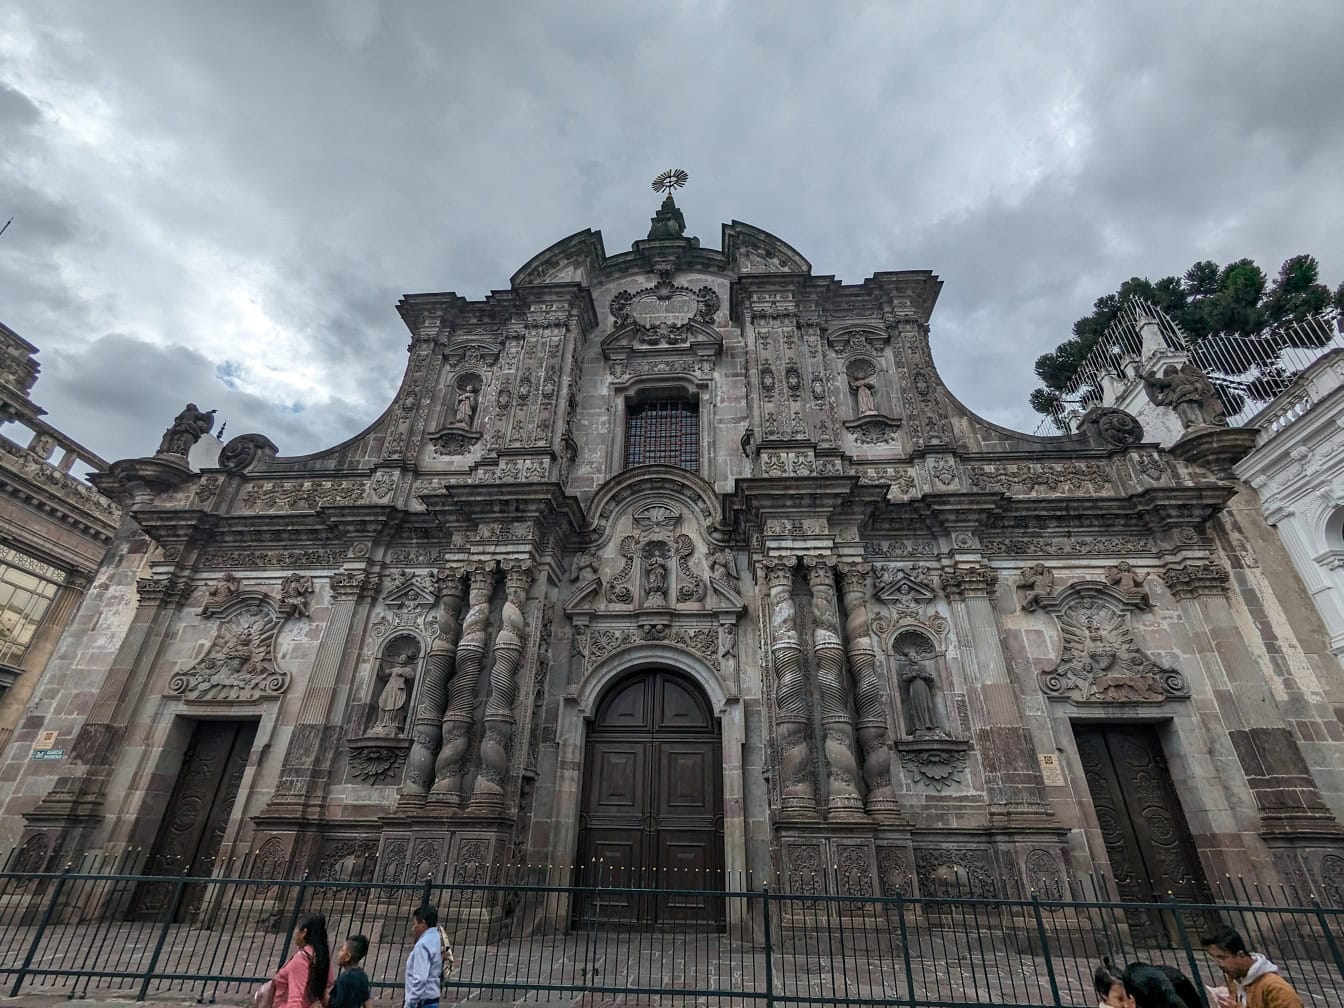 Kościół rzymskokatolicki i klasztor św. Ignacego Loyoli Towarzystwa Jezusowego w Quito, stolicy Ekwadoru